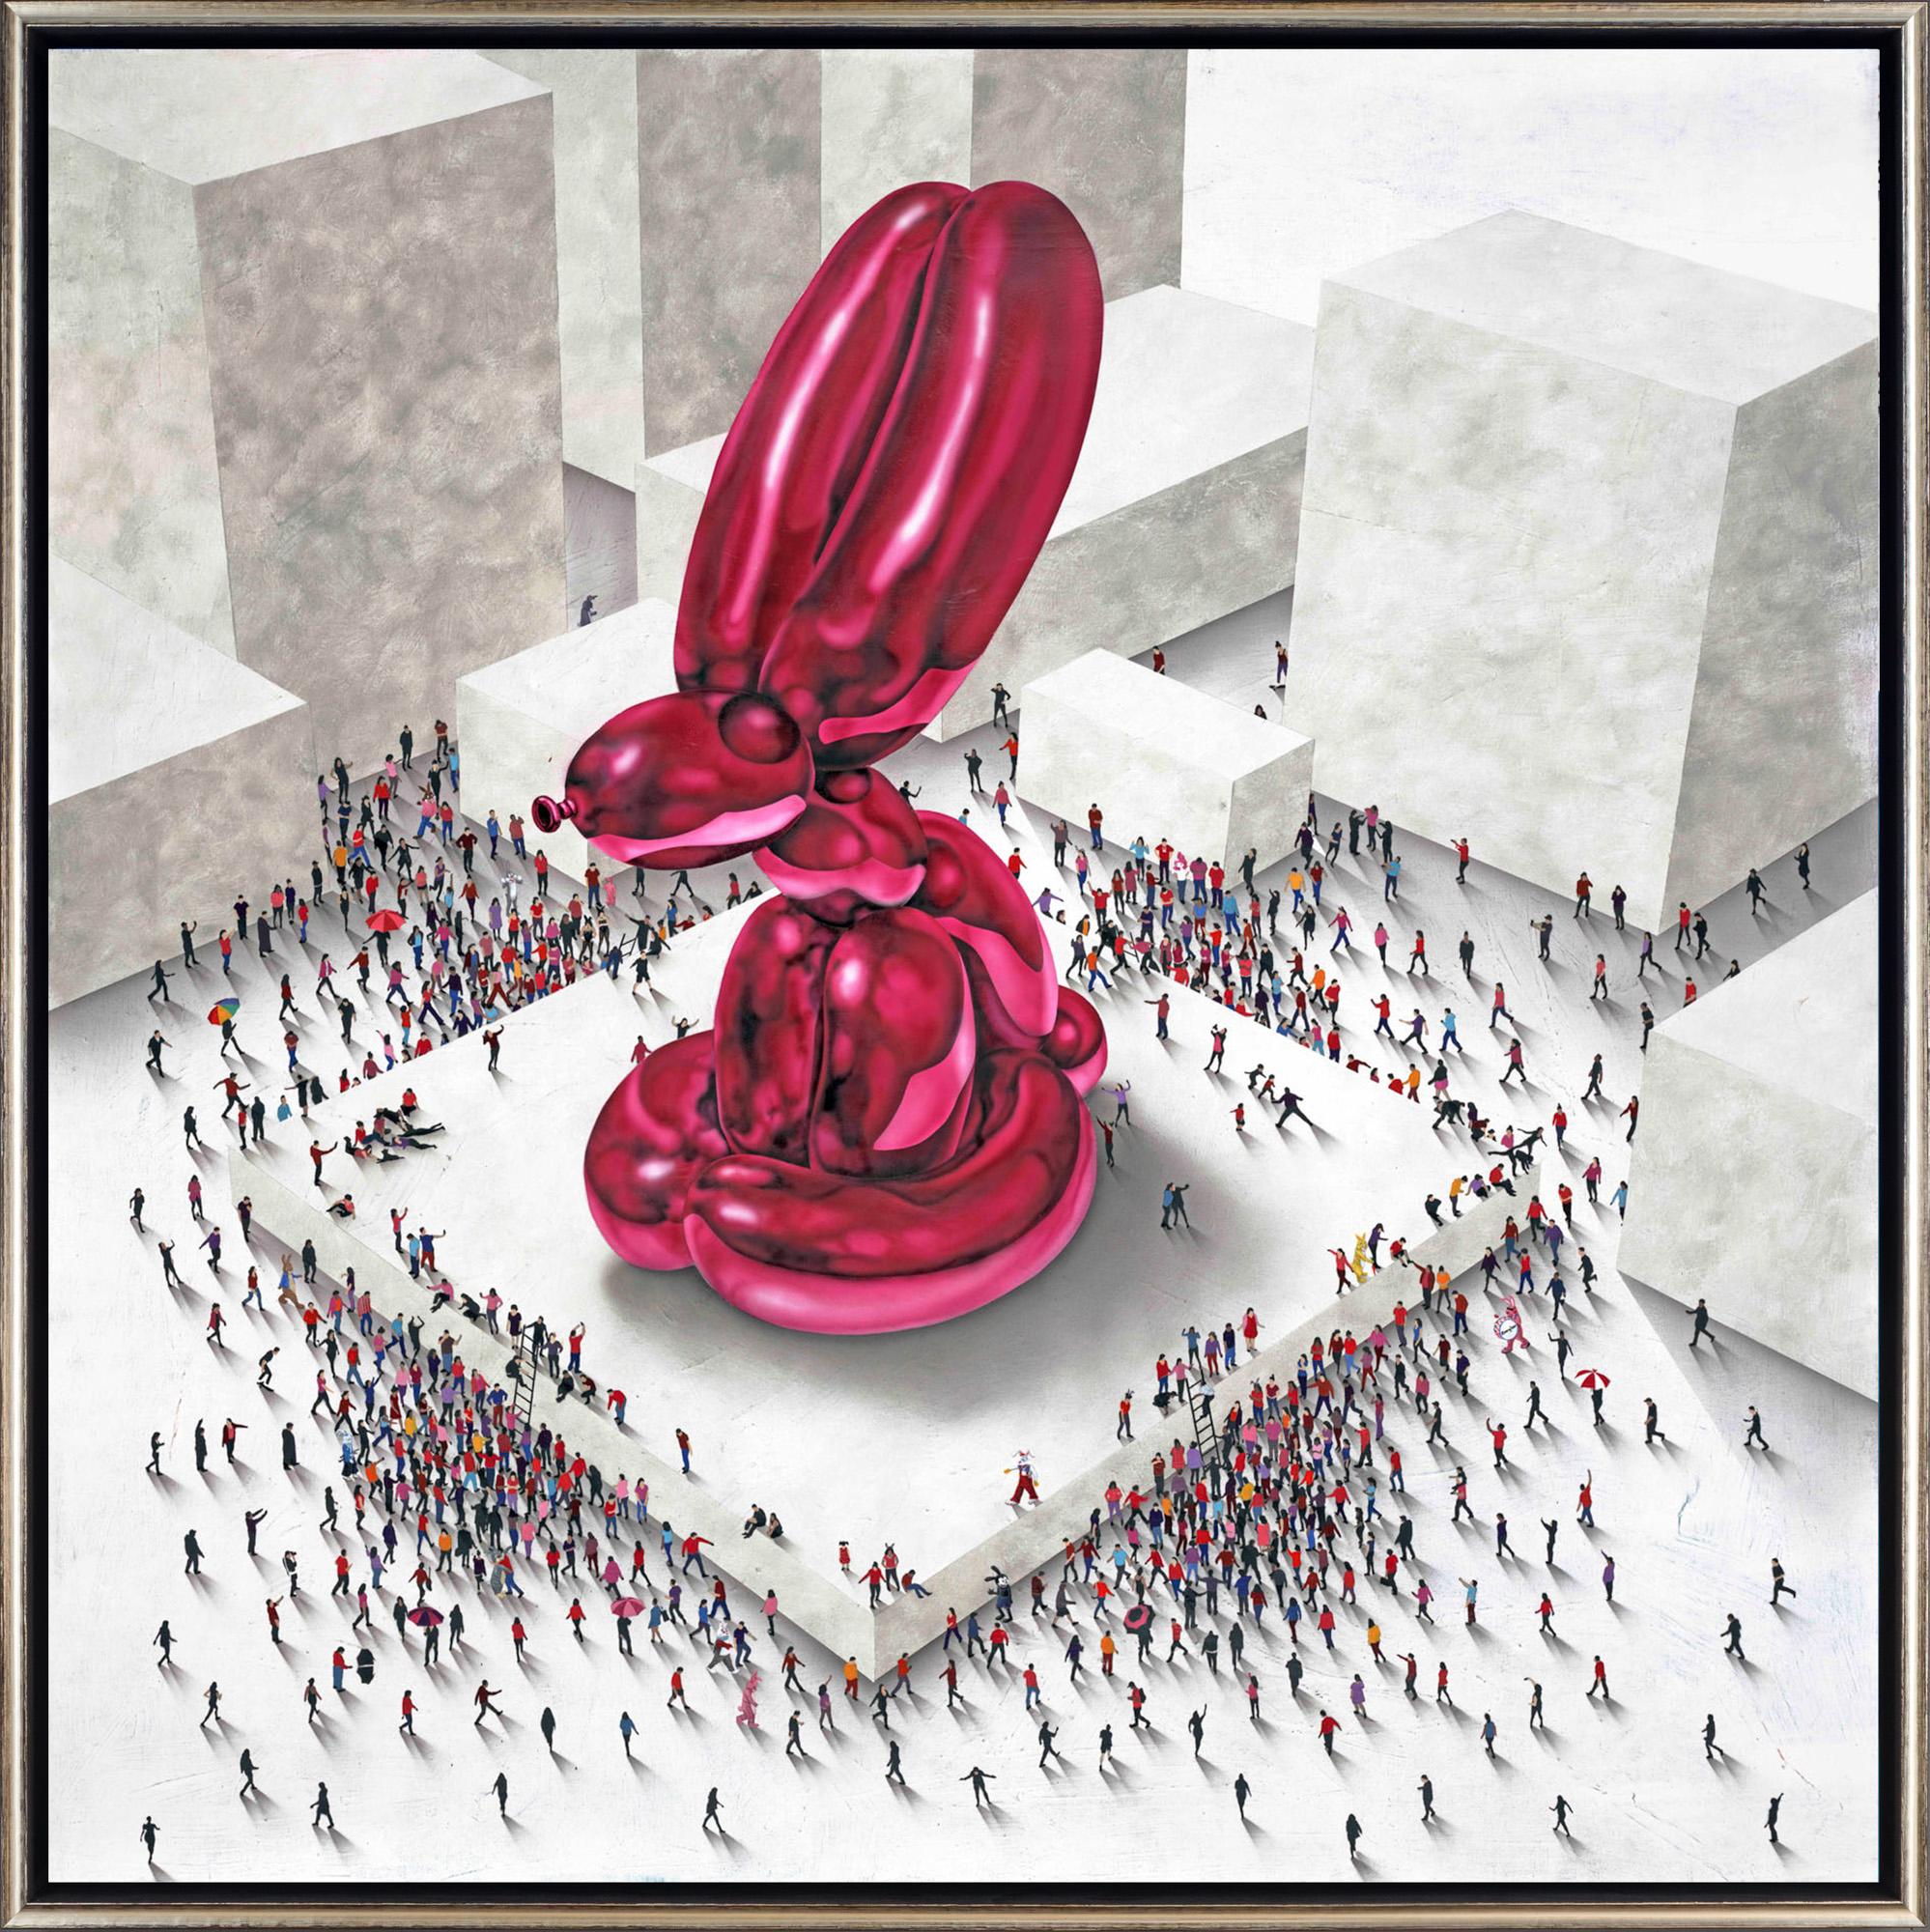 Figurative Painting Craig Alan - "Populus : Helium Hare" Lapin à ballons avec foule Édition limitée Giclée sur toile